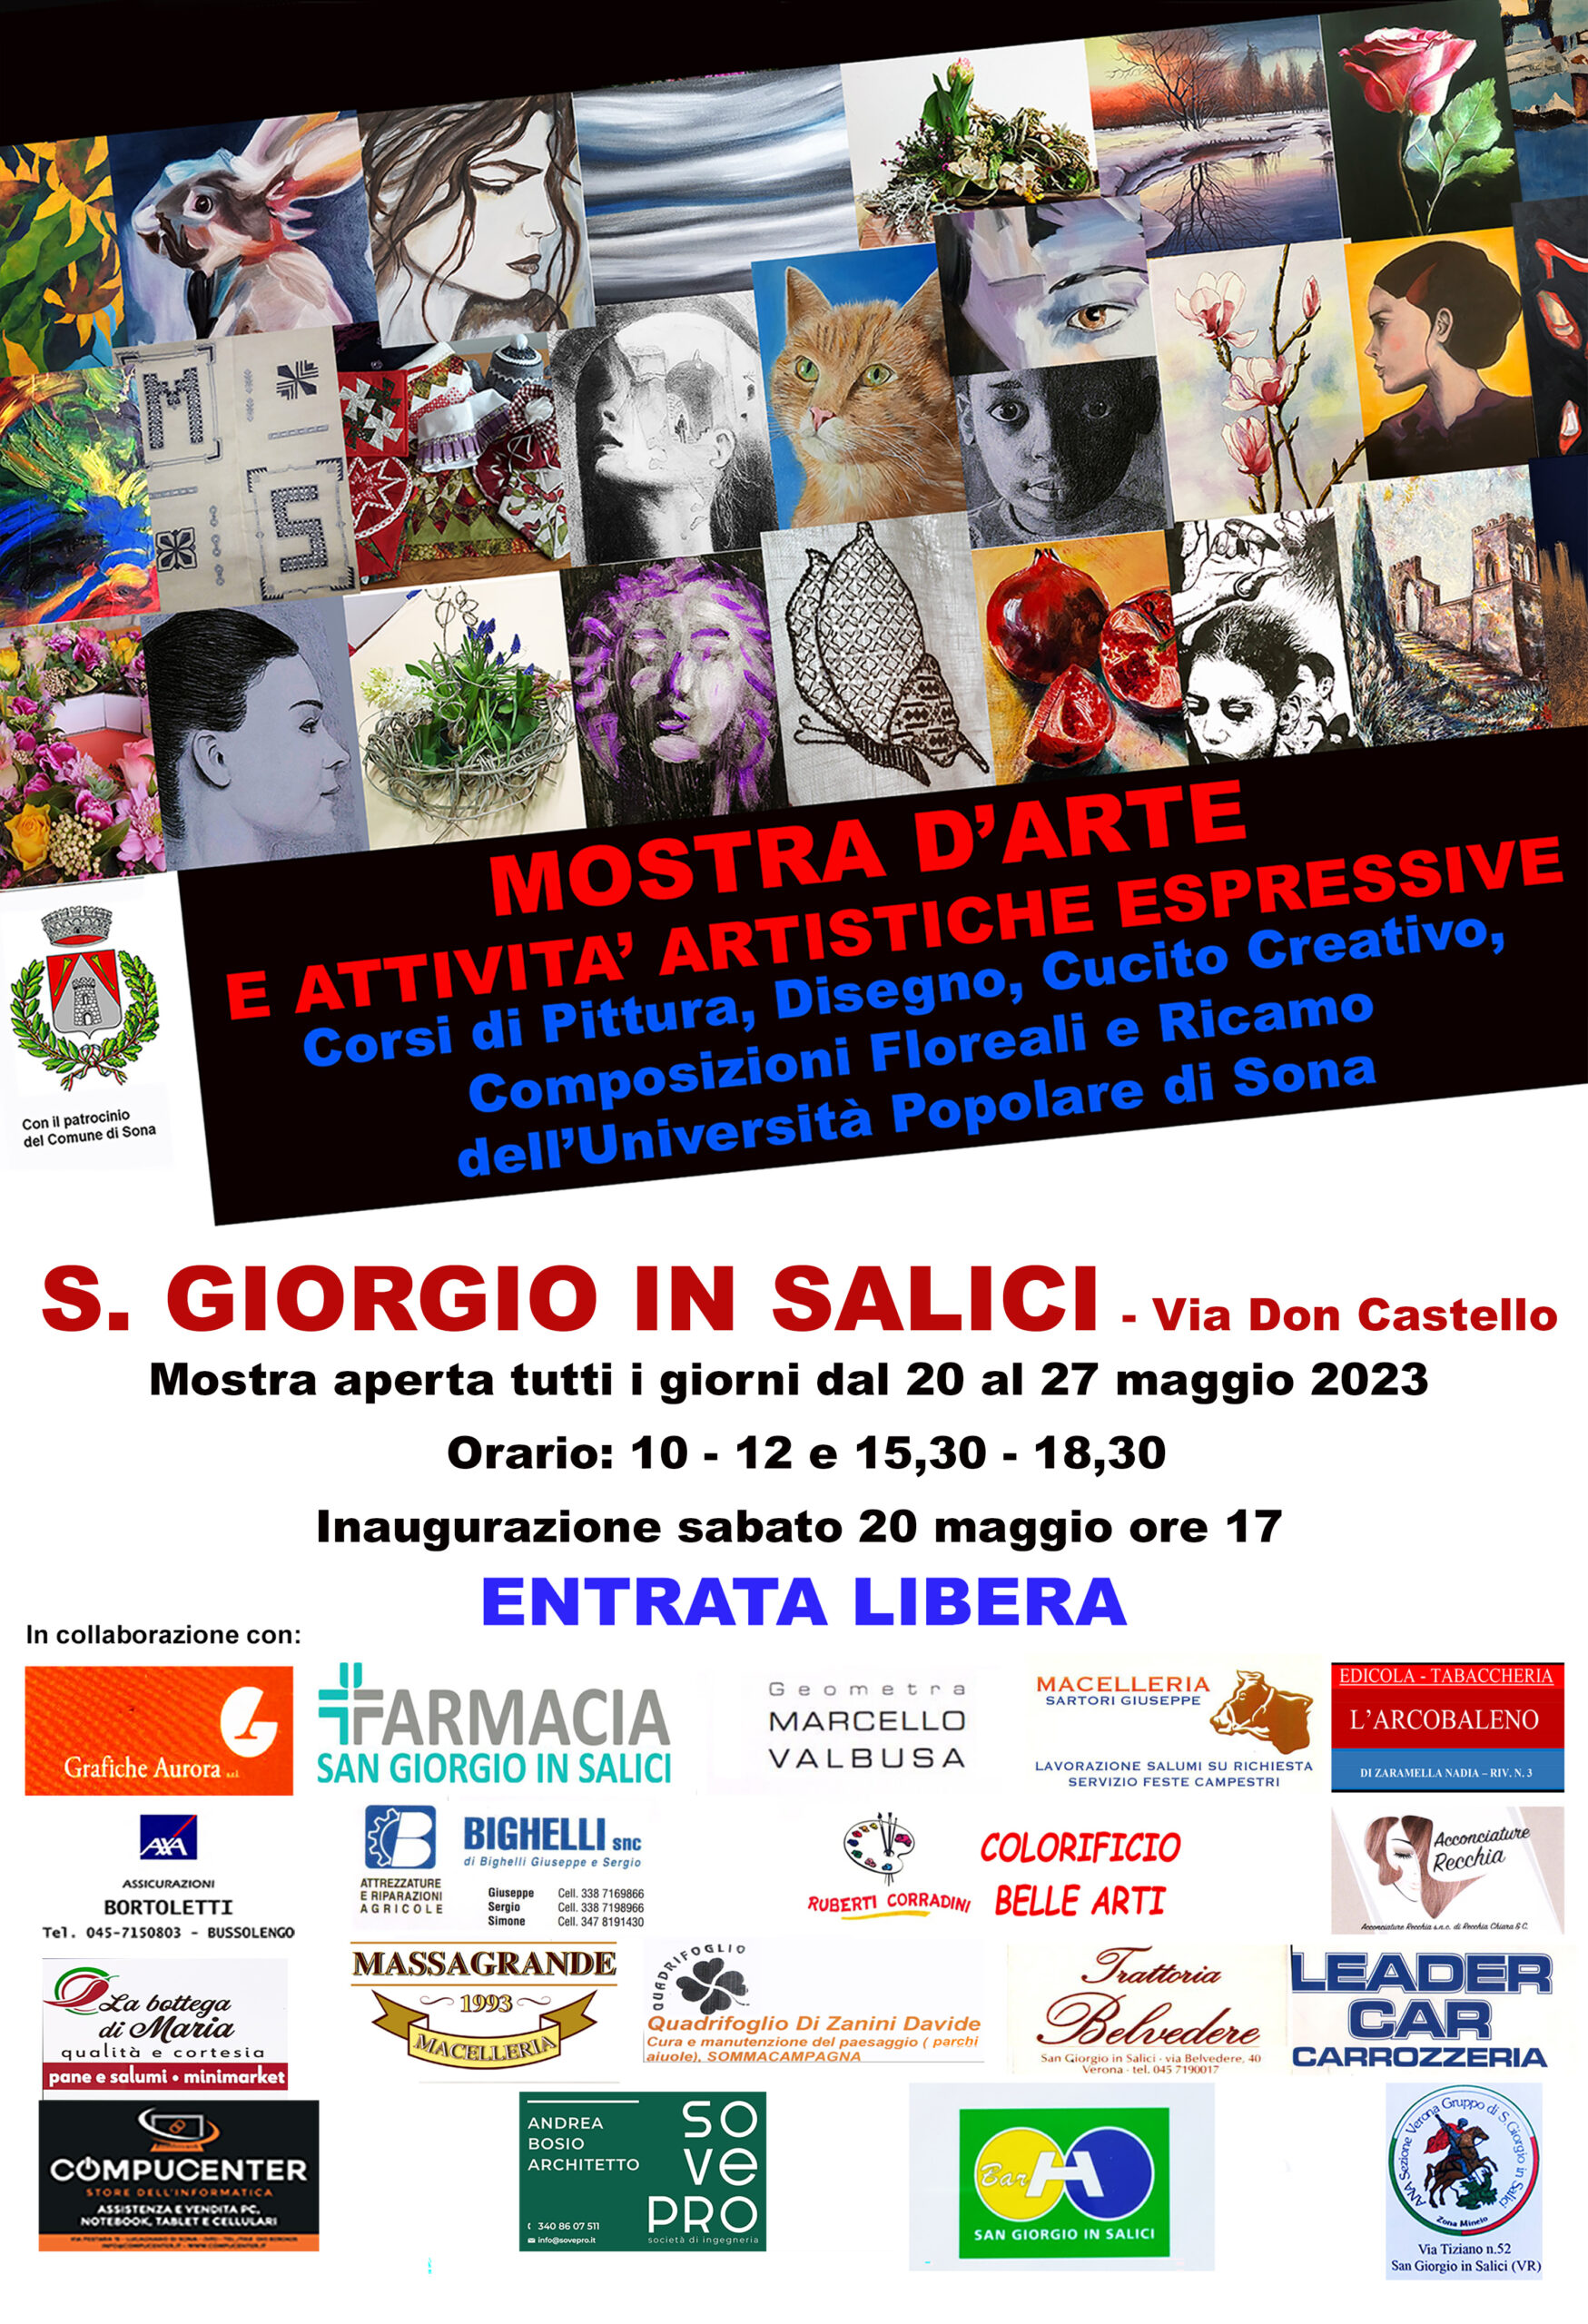 Sona, l’Università popolare presenta i propri lavori a San Giorgio in Salici